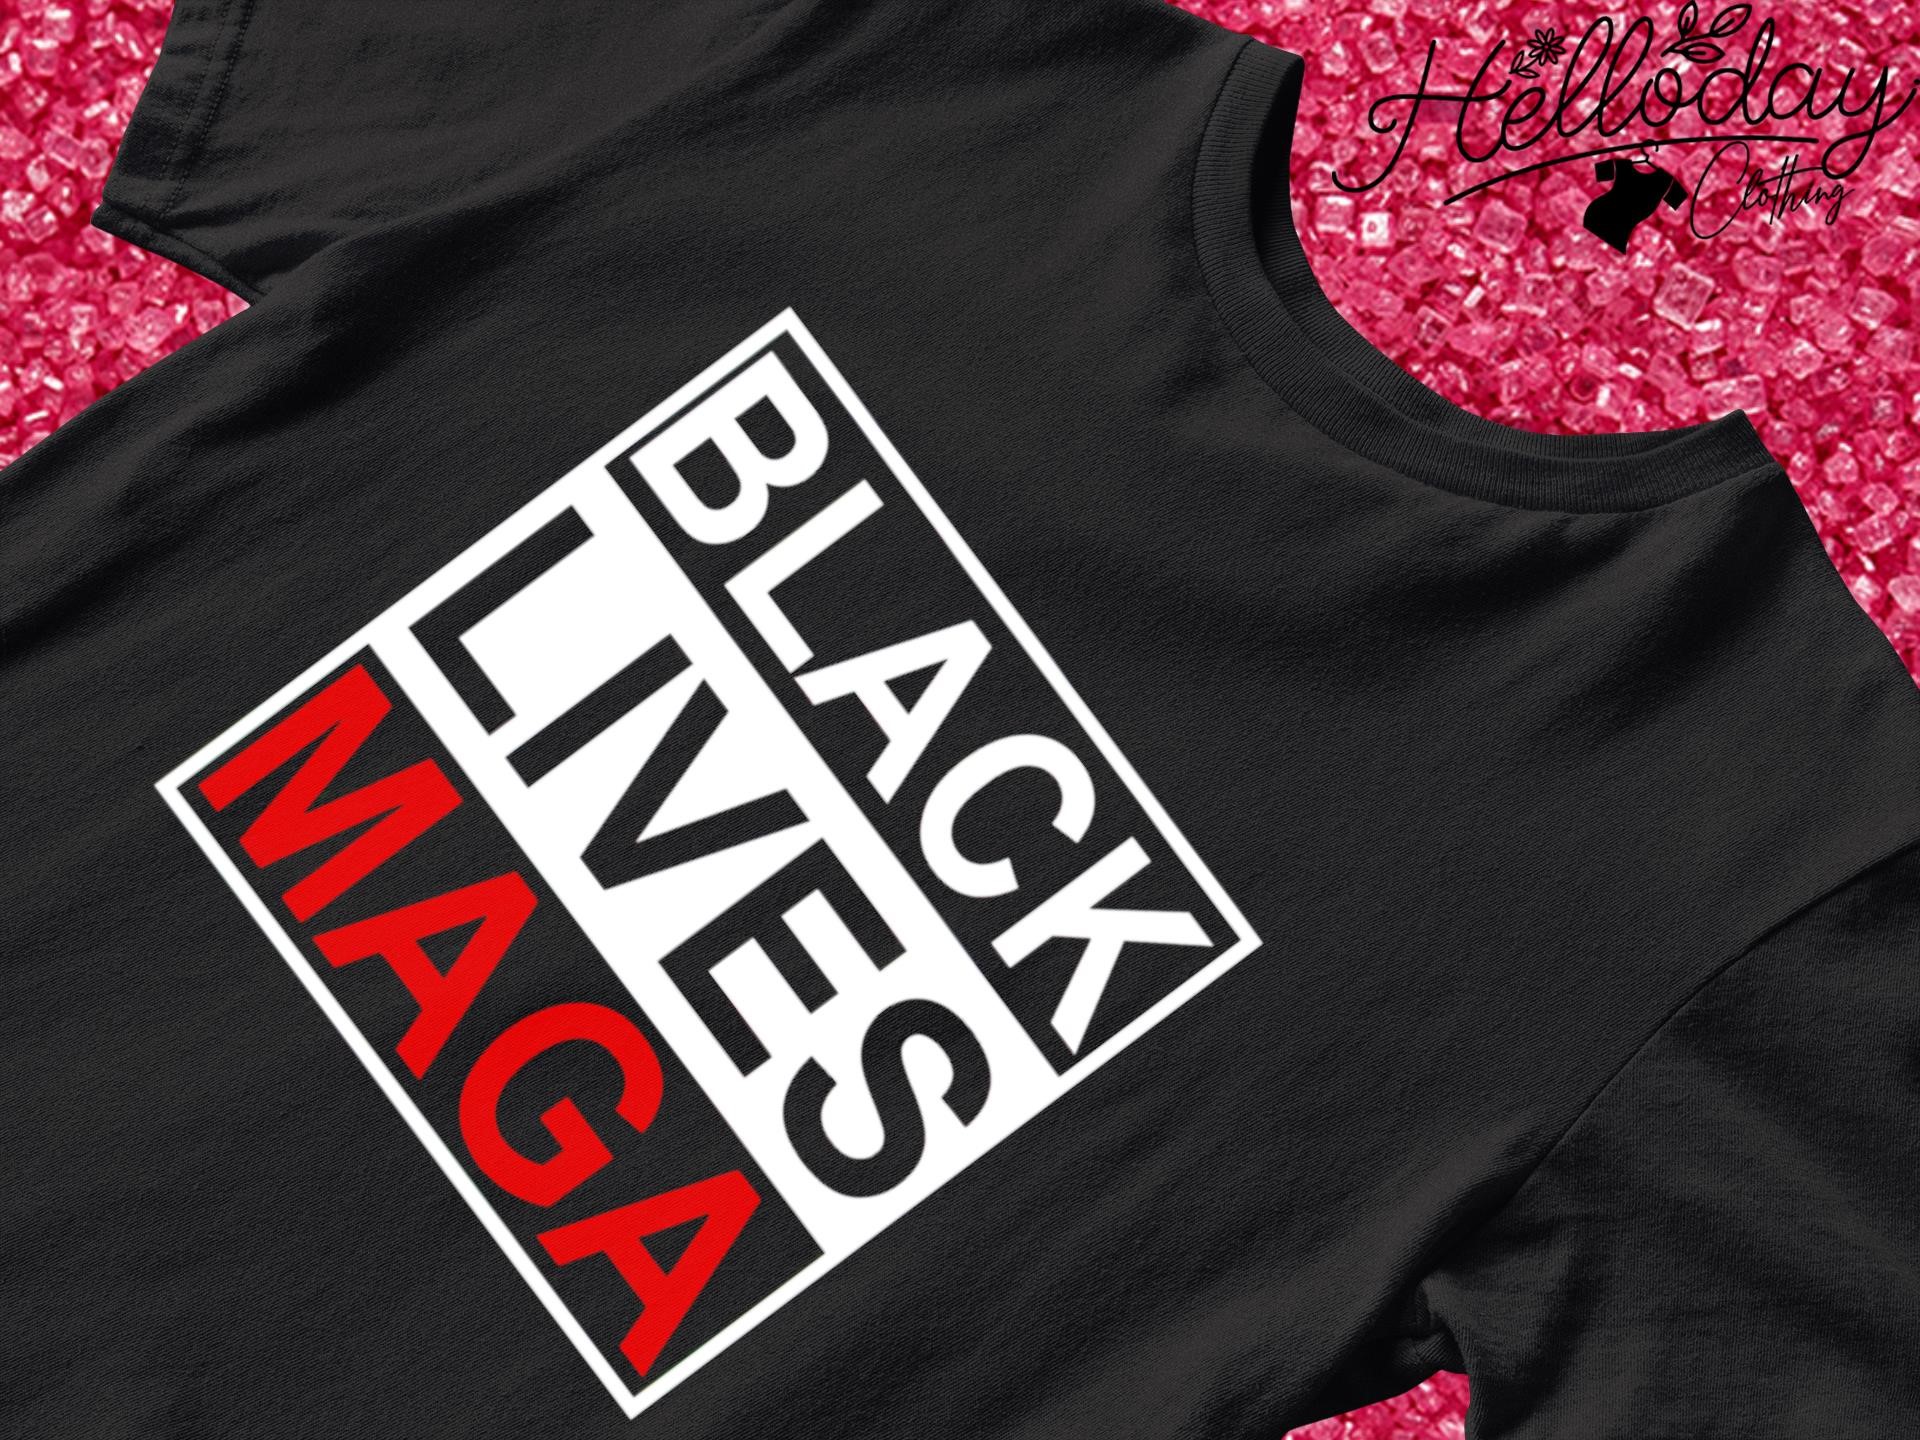 Black Lives Maga shirt